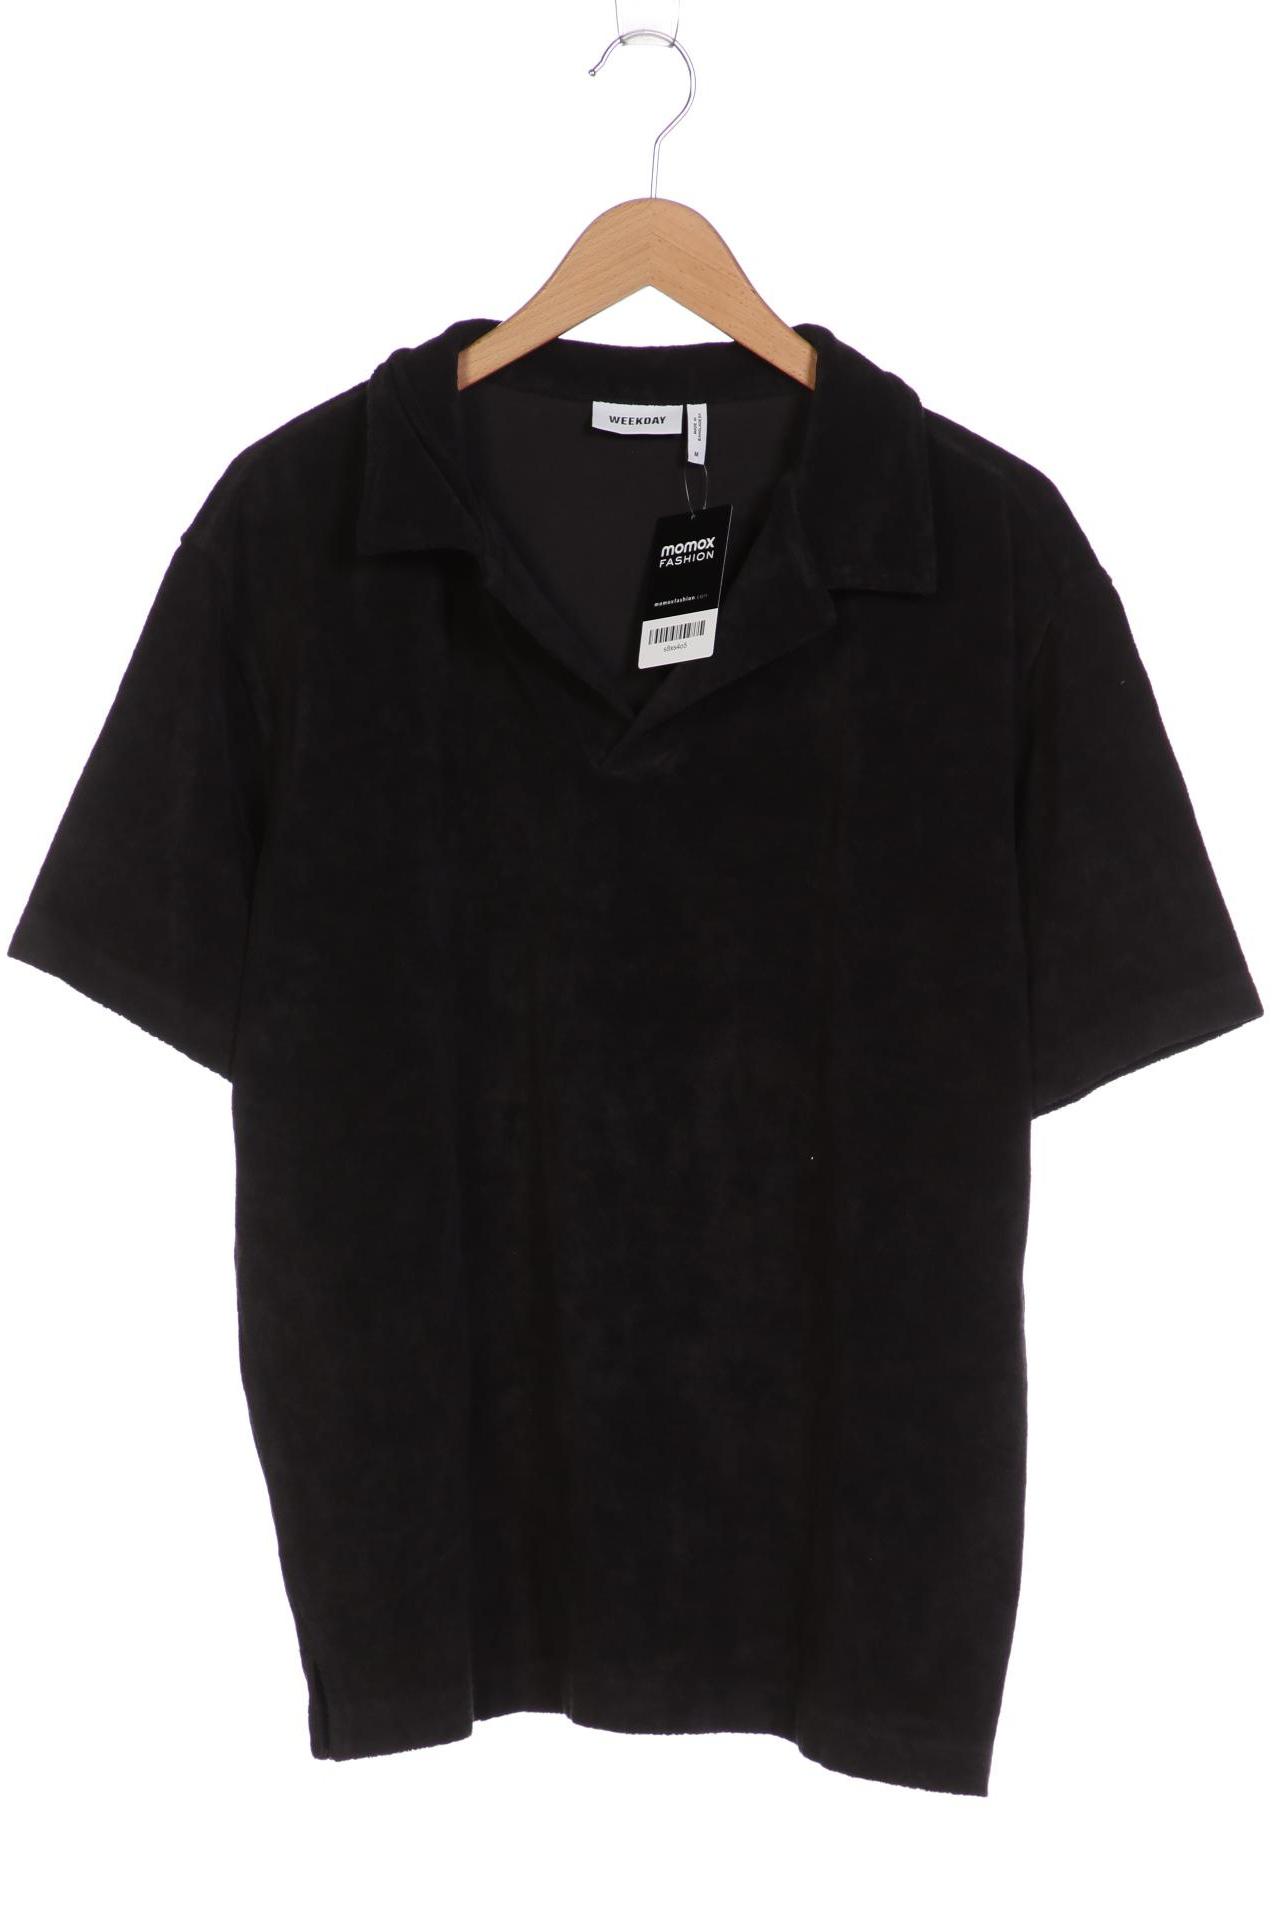 Weekday Herren Poloshirt, schwarz, Gr. 48 von Weekday